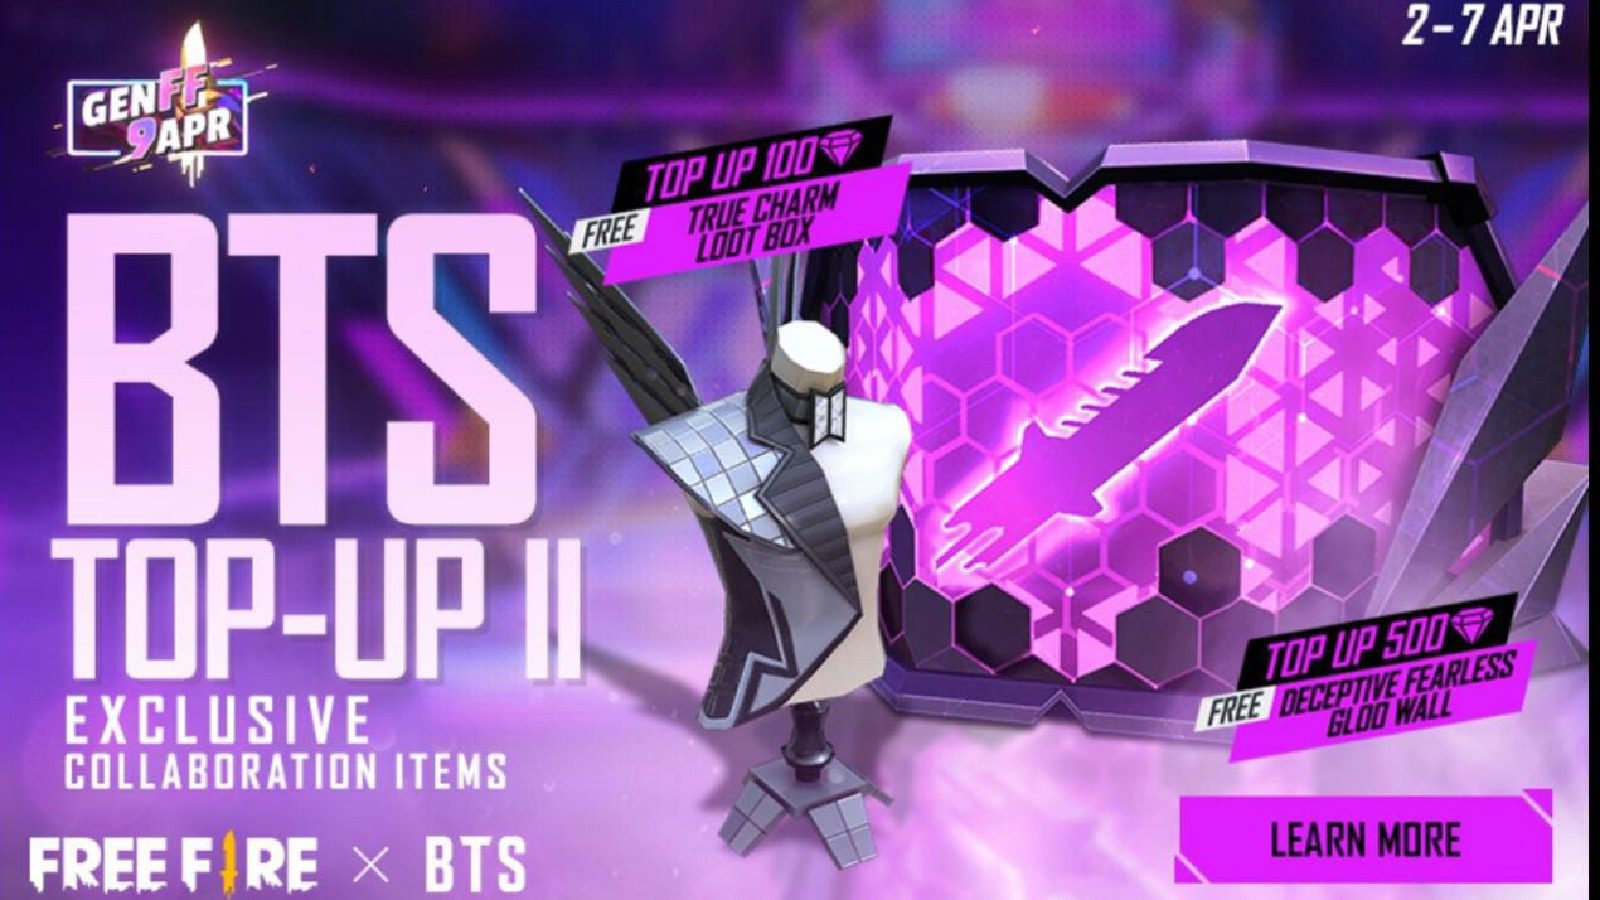 Free Fire X BTS Top-Up 2: получите бесплатный эксклюзивный ящик с сокровищами True Charm и окраску стены Gloo.